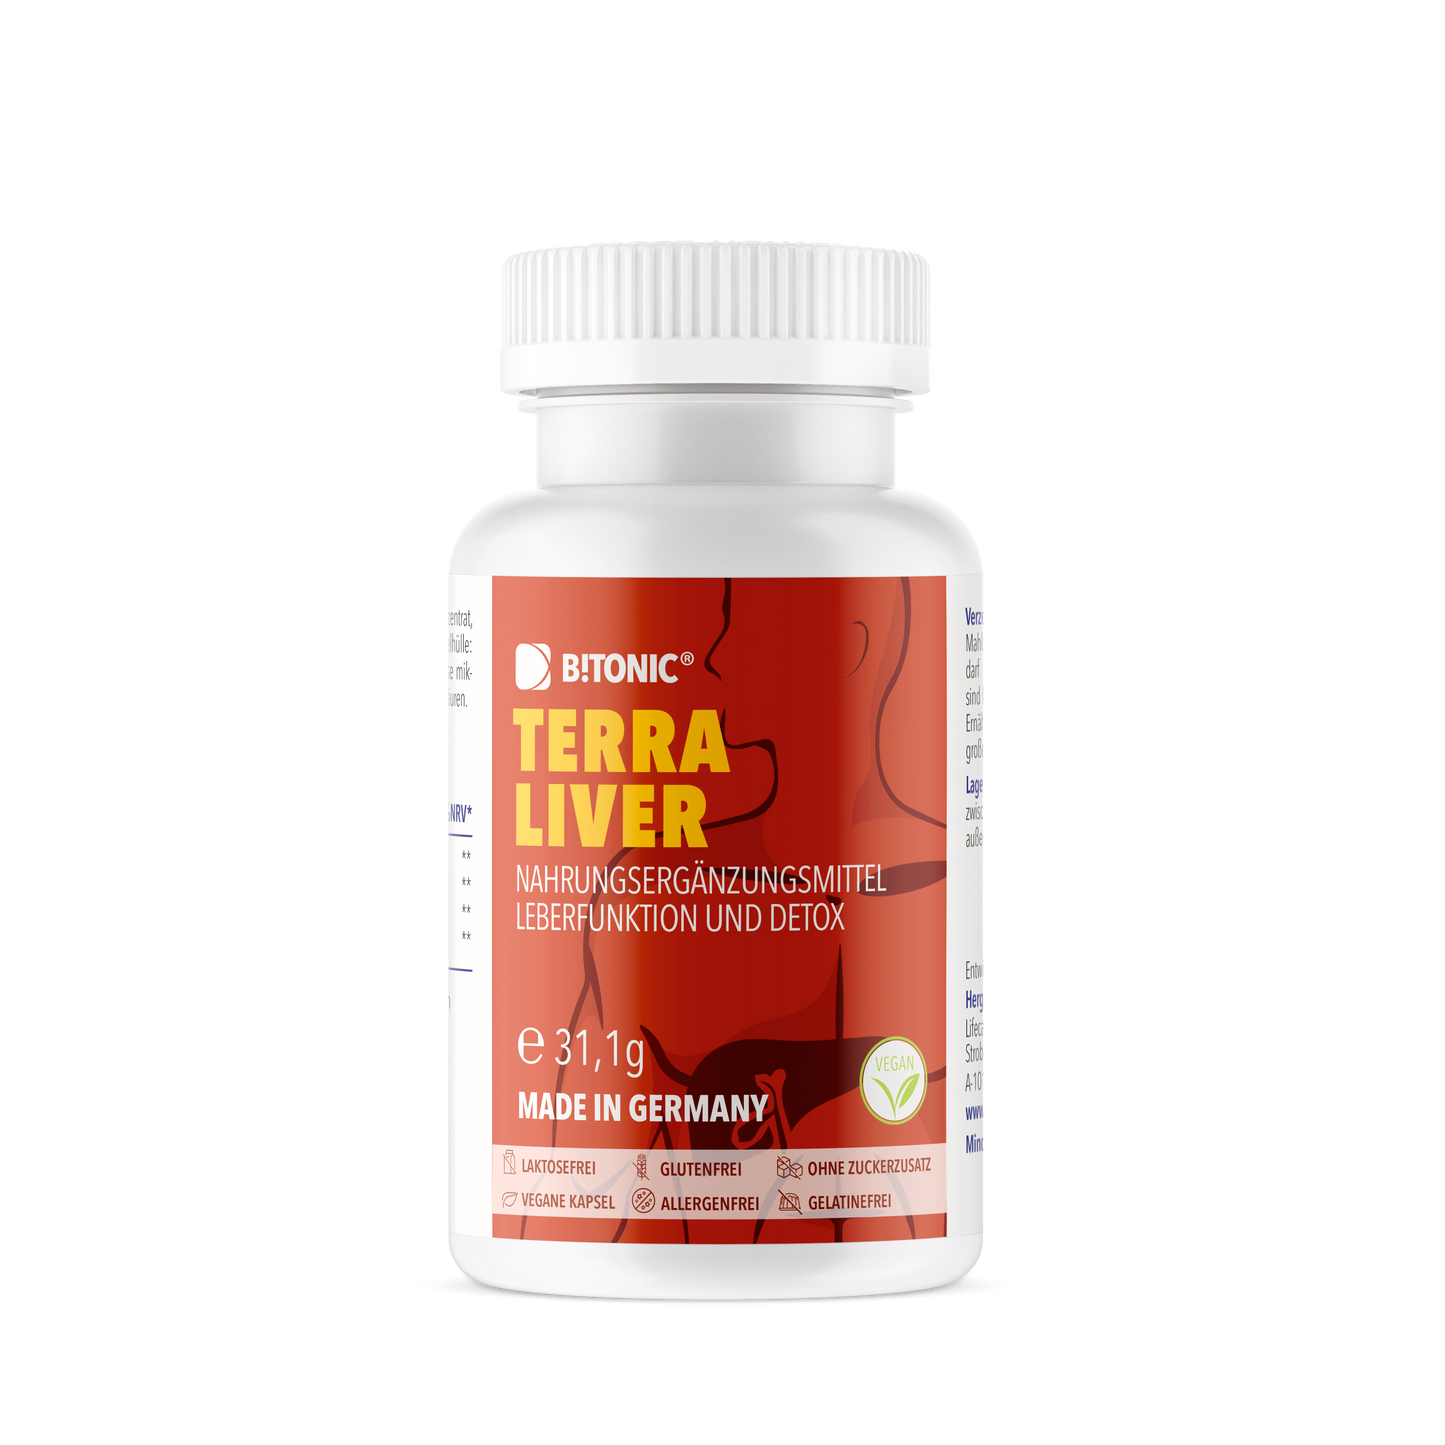 B!TONIC® Terra Liver - Natural liver complex